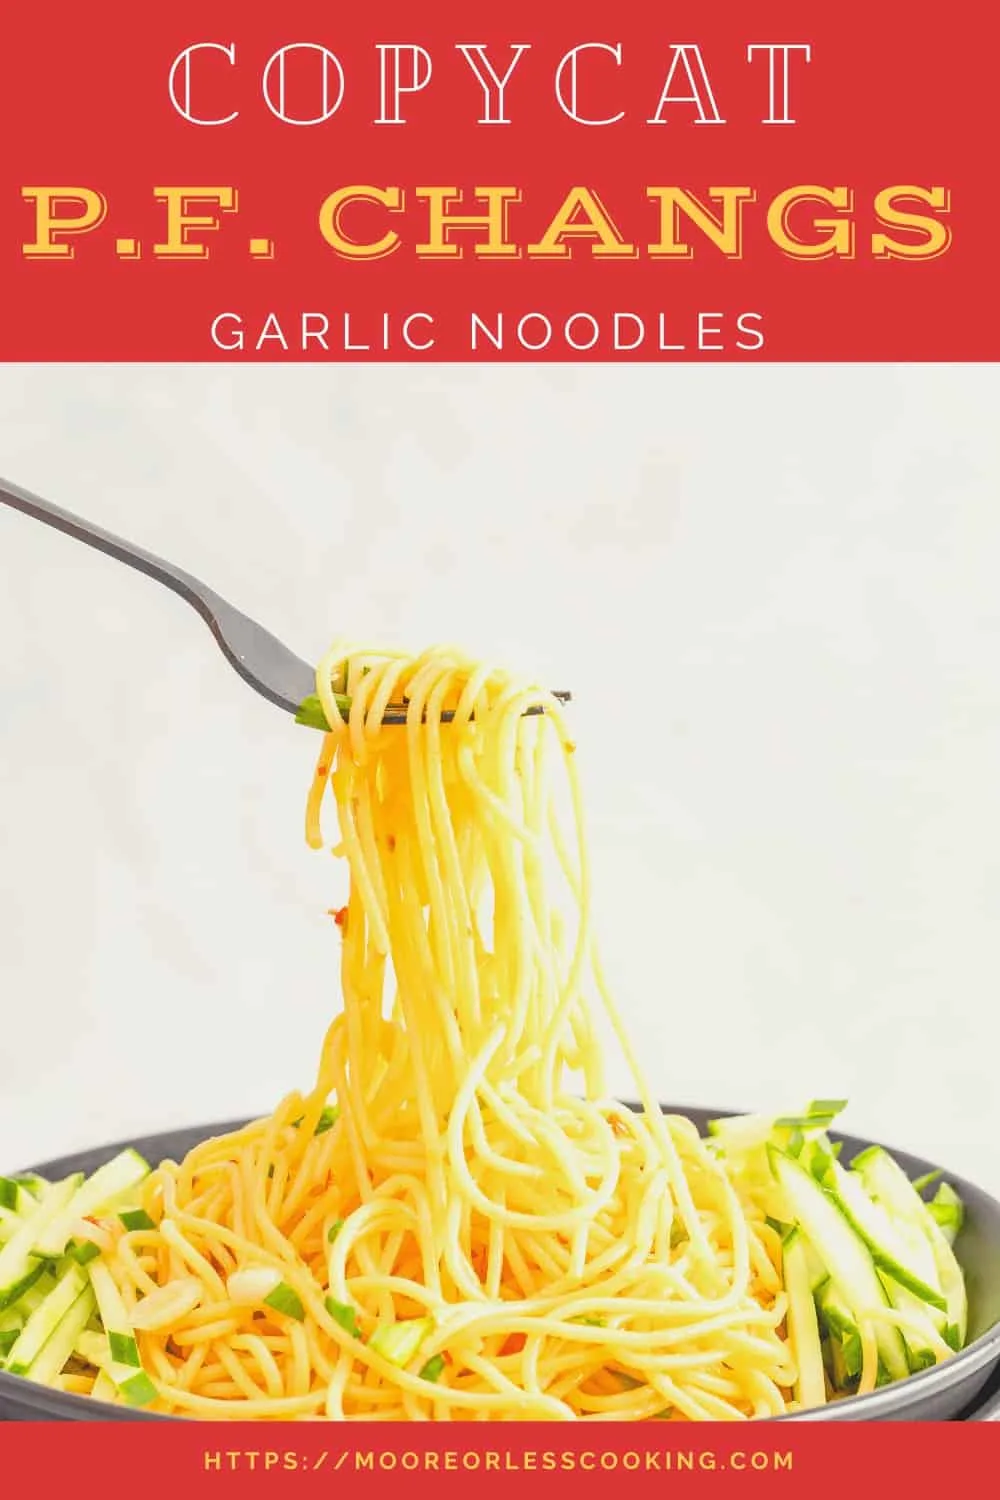 Copycat P.F. Changs Garlic Noodles